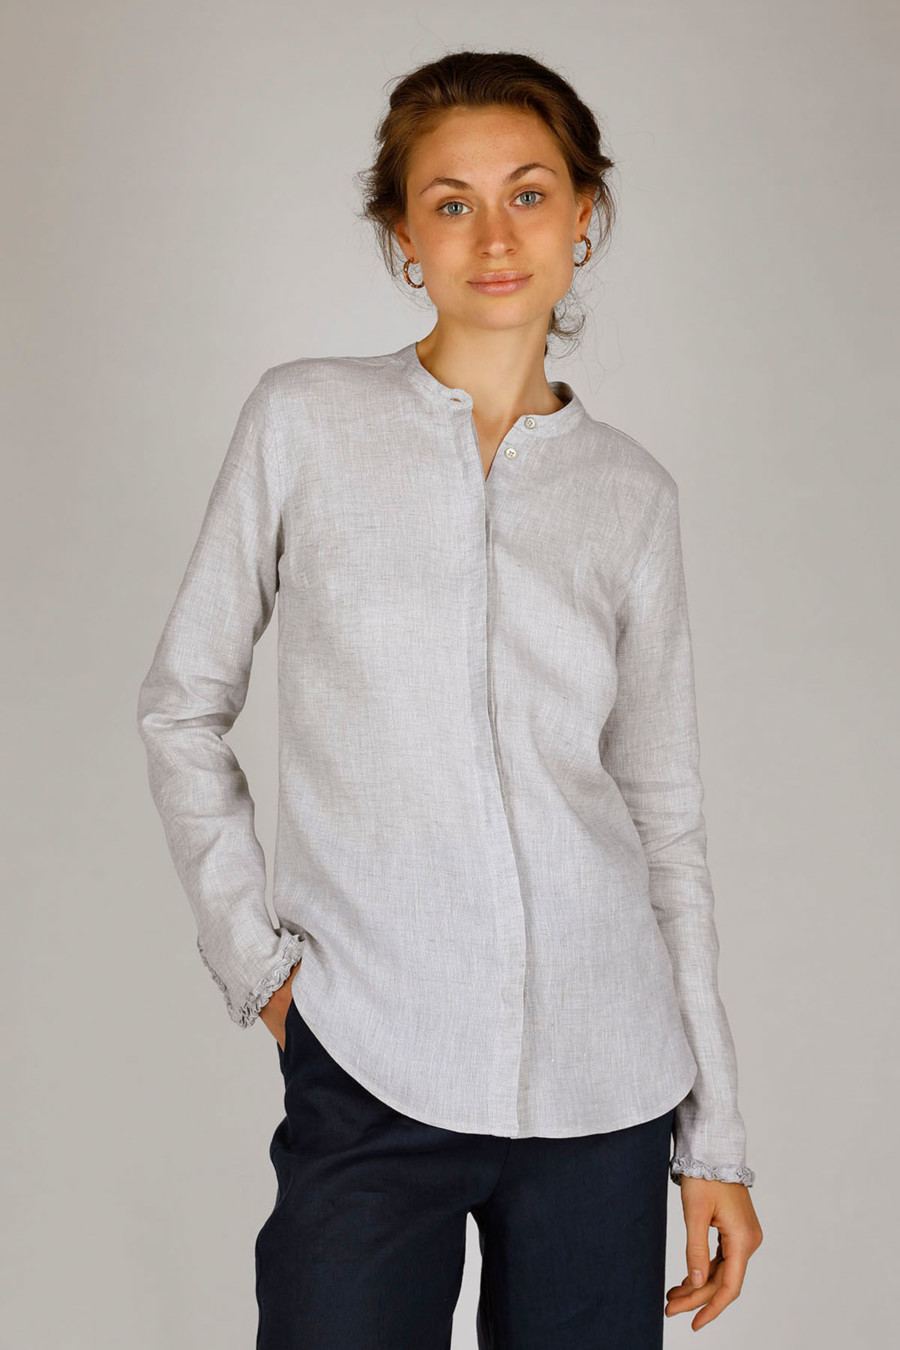 EASY – Taillierte Bluse aus natürlichem Leinen – Farbe: Silver